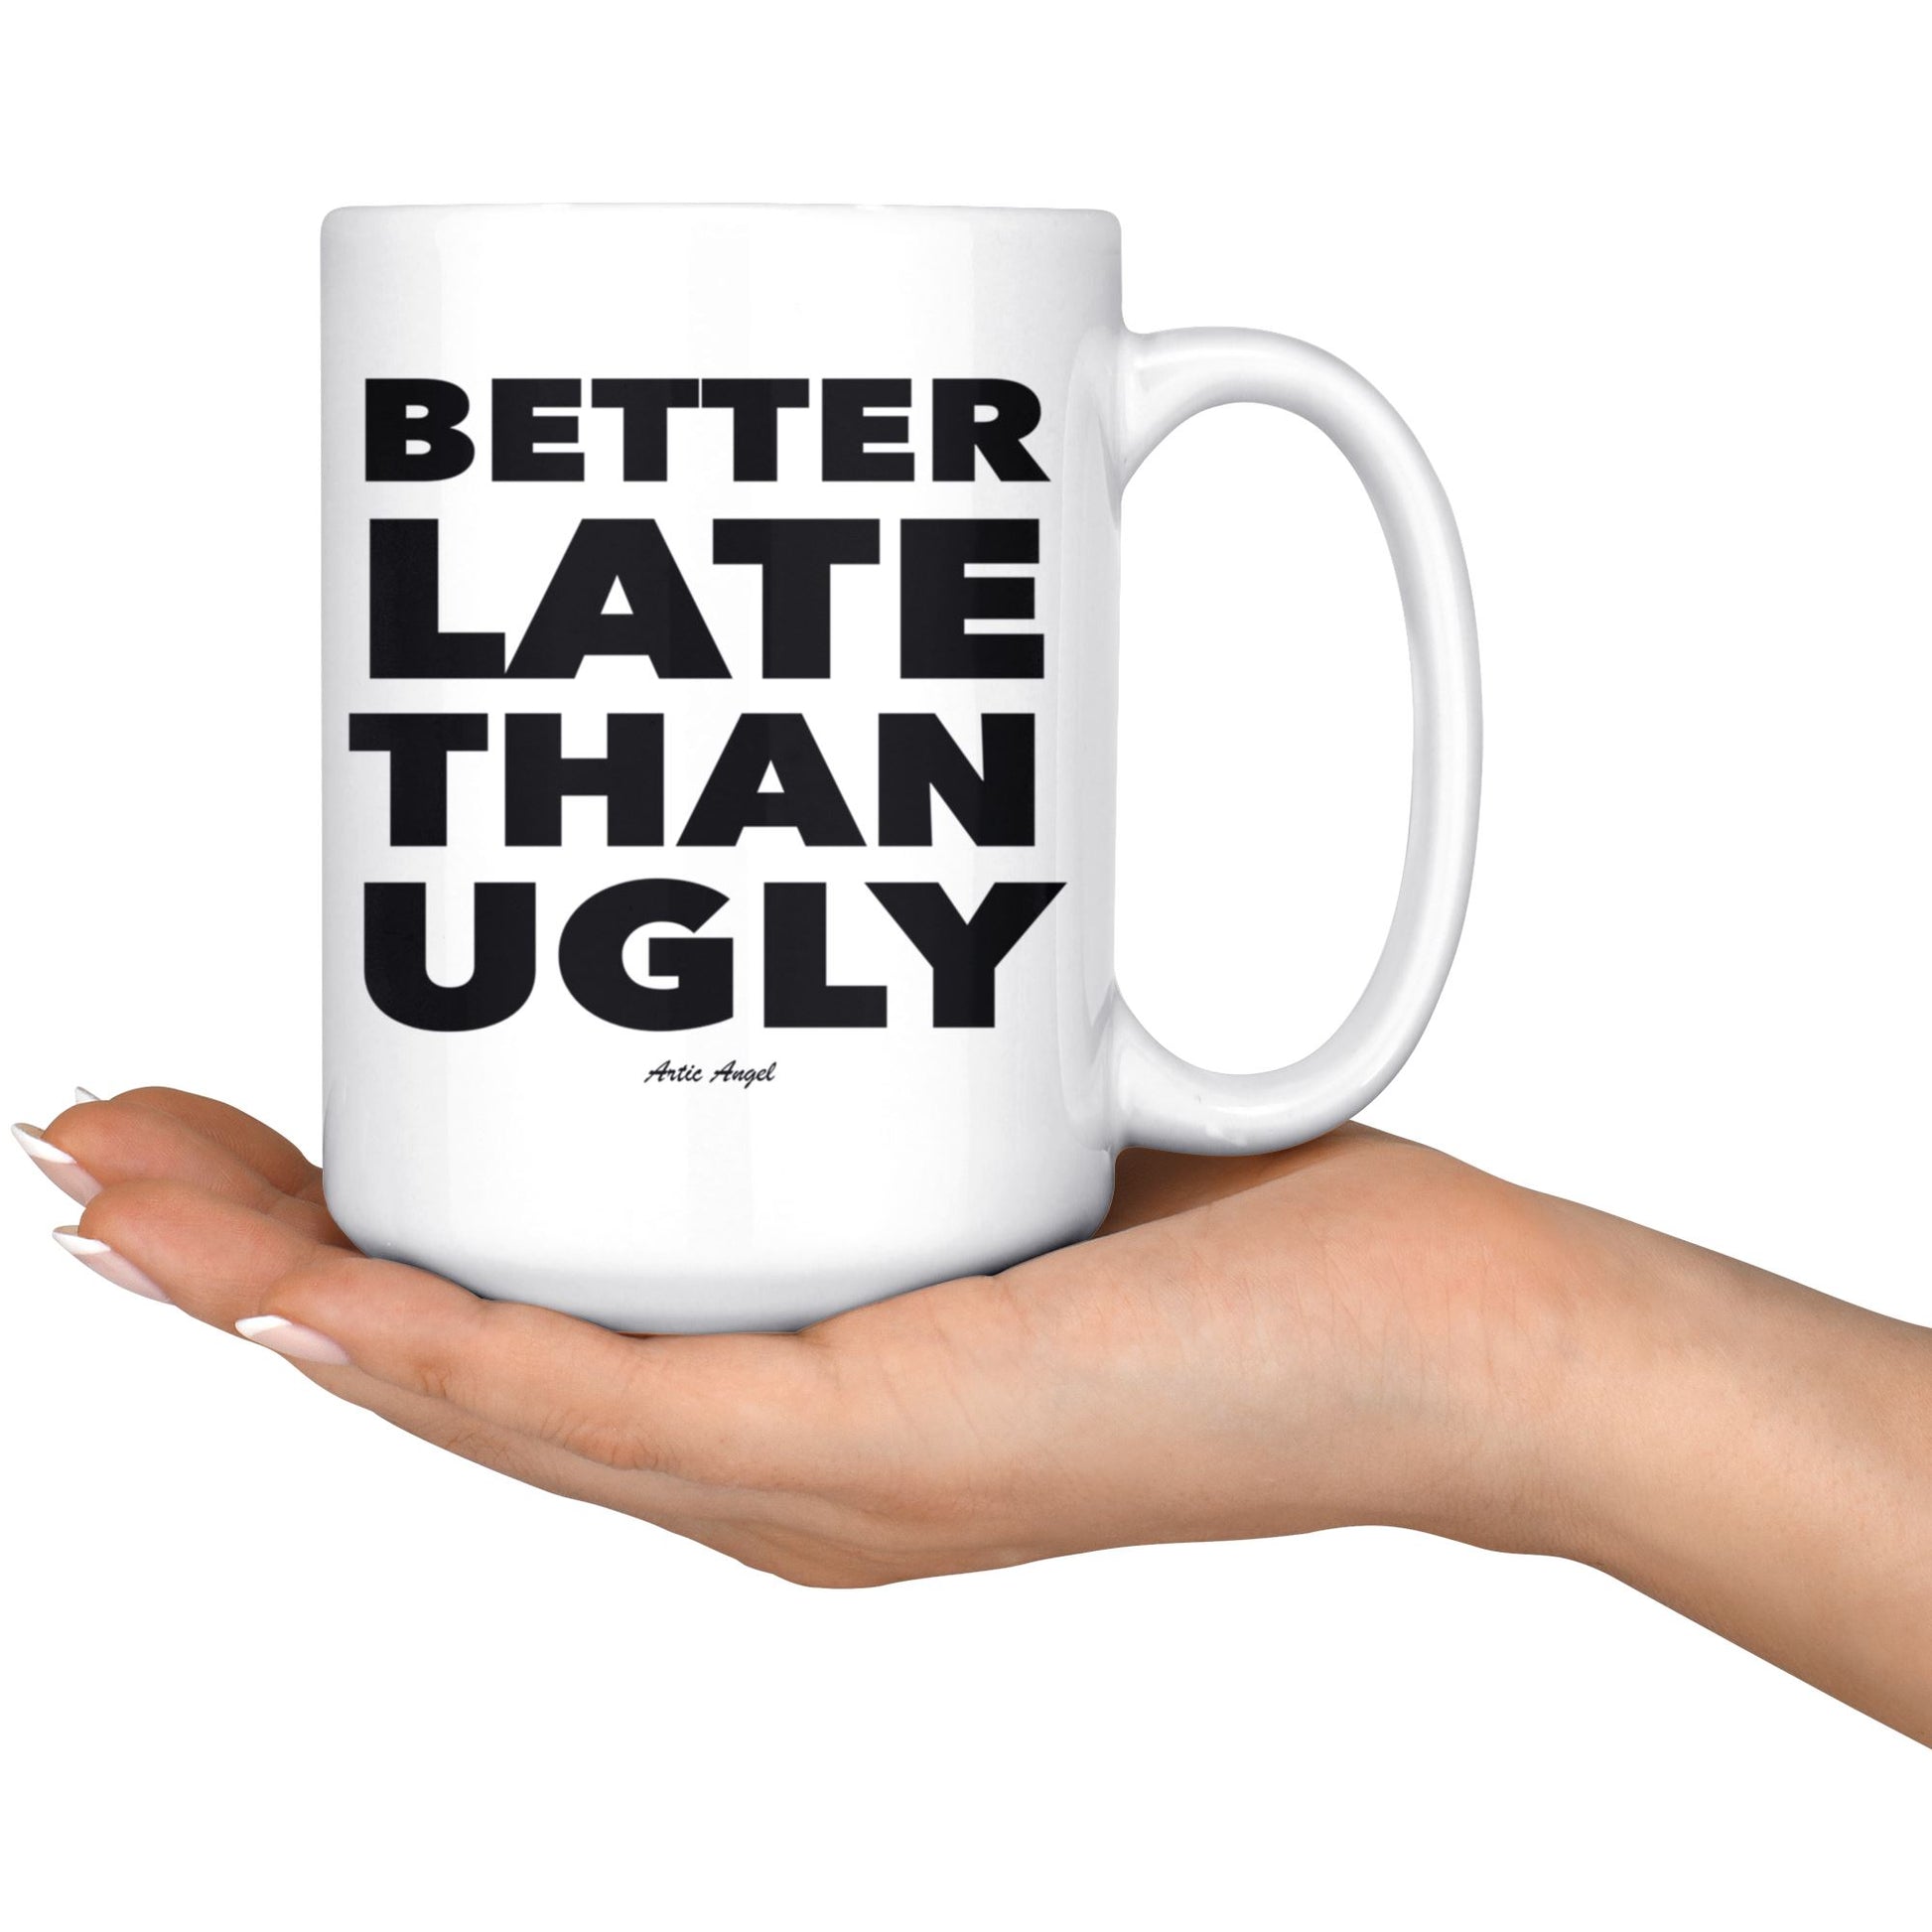 Funny "Better Late Than Ugly" - Coffee Mug Drinkware 